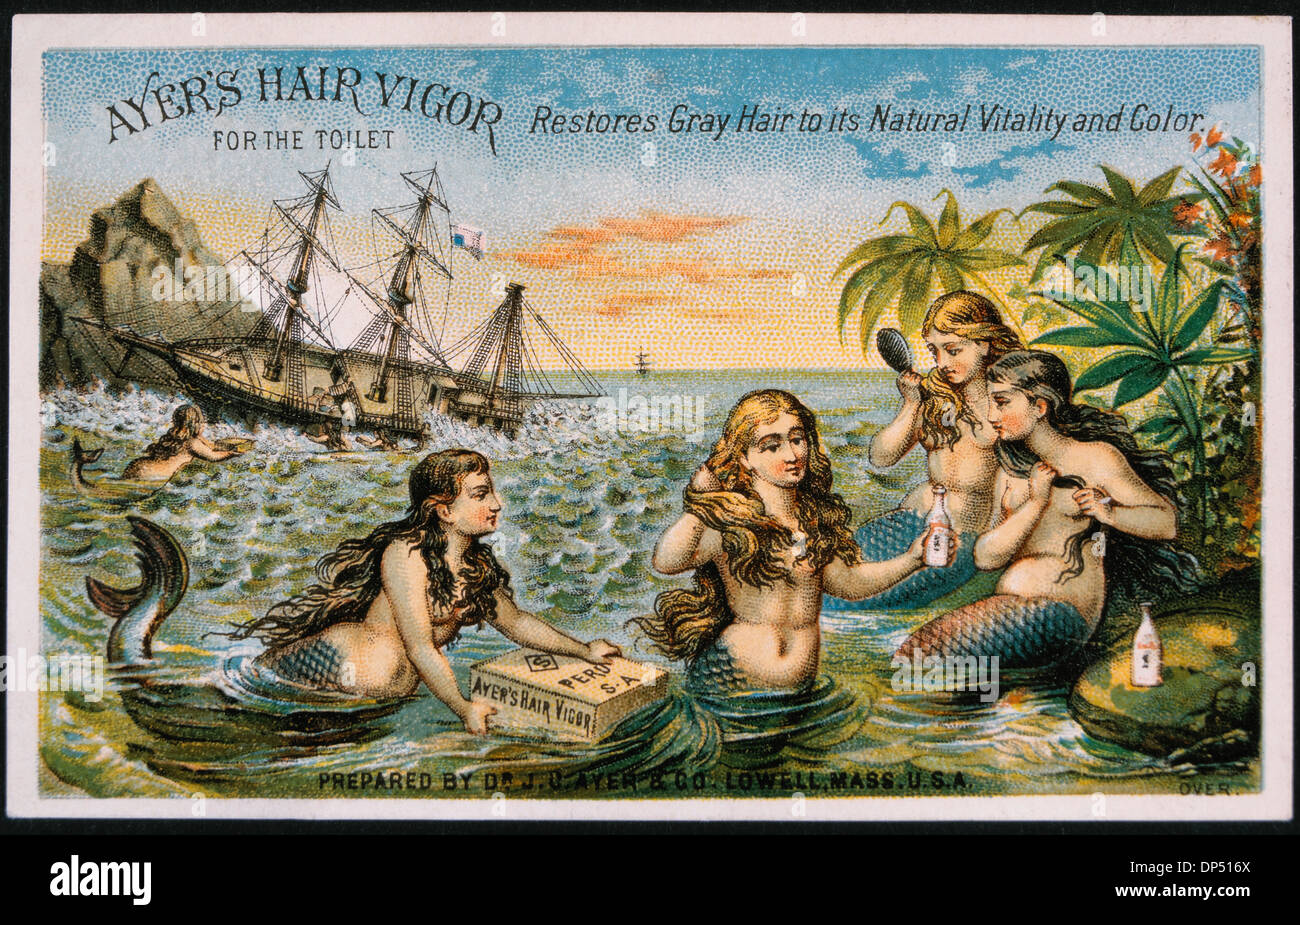 La récupération des sirènes les boîtes du bateau qui coule, les cheveux d'Ayer de vigueur, Vintage Trade Card, vers 1900 Banque D'Images